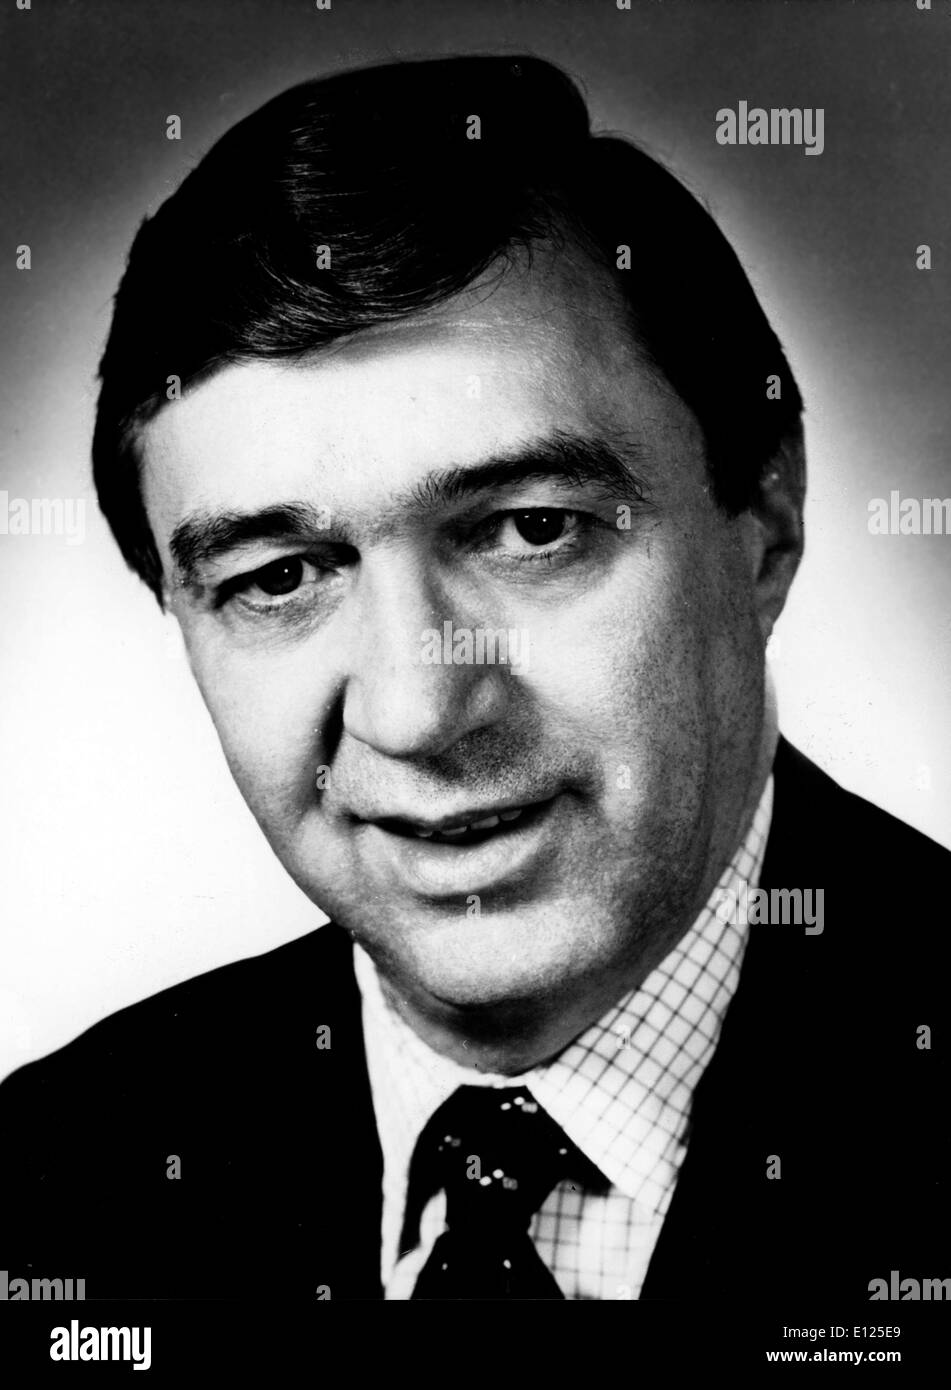 Mayo 15, 1998; Ottawa, Canadá; Presidente de la Junta de Desarrollo Económico en Canadá, ROBERT KNIGHT ANDRA Foto de stock